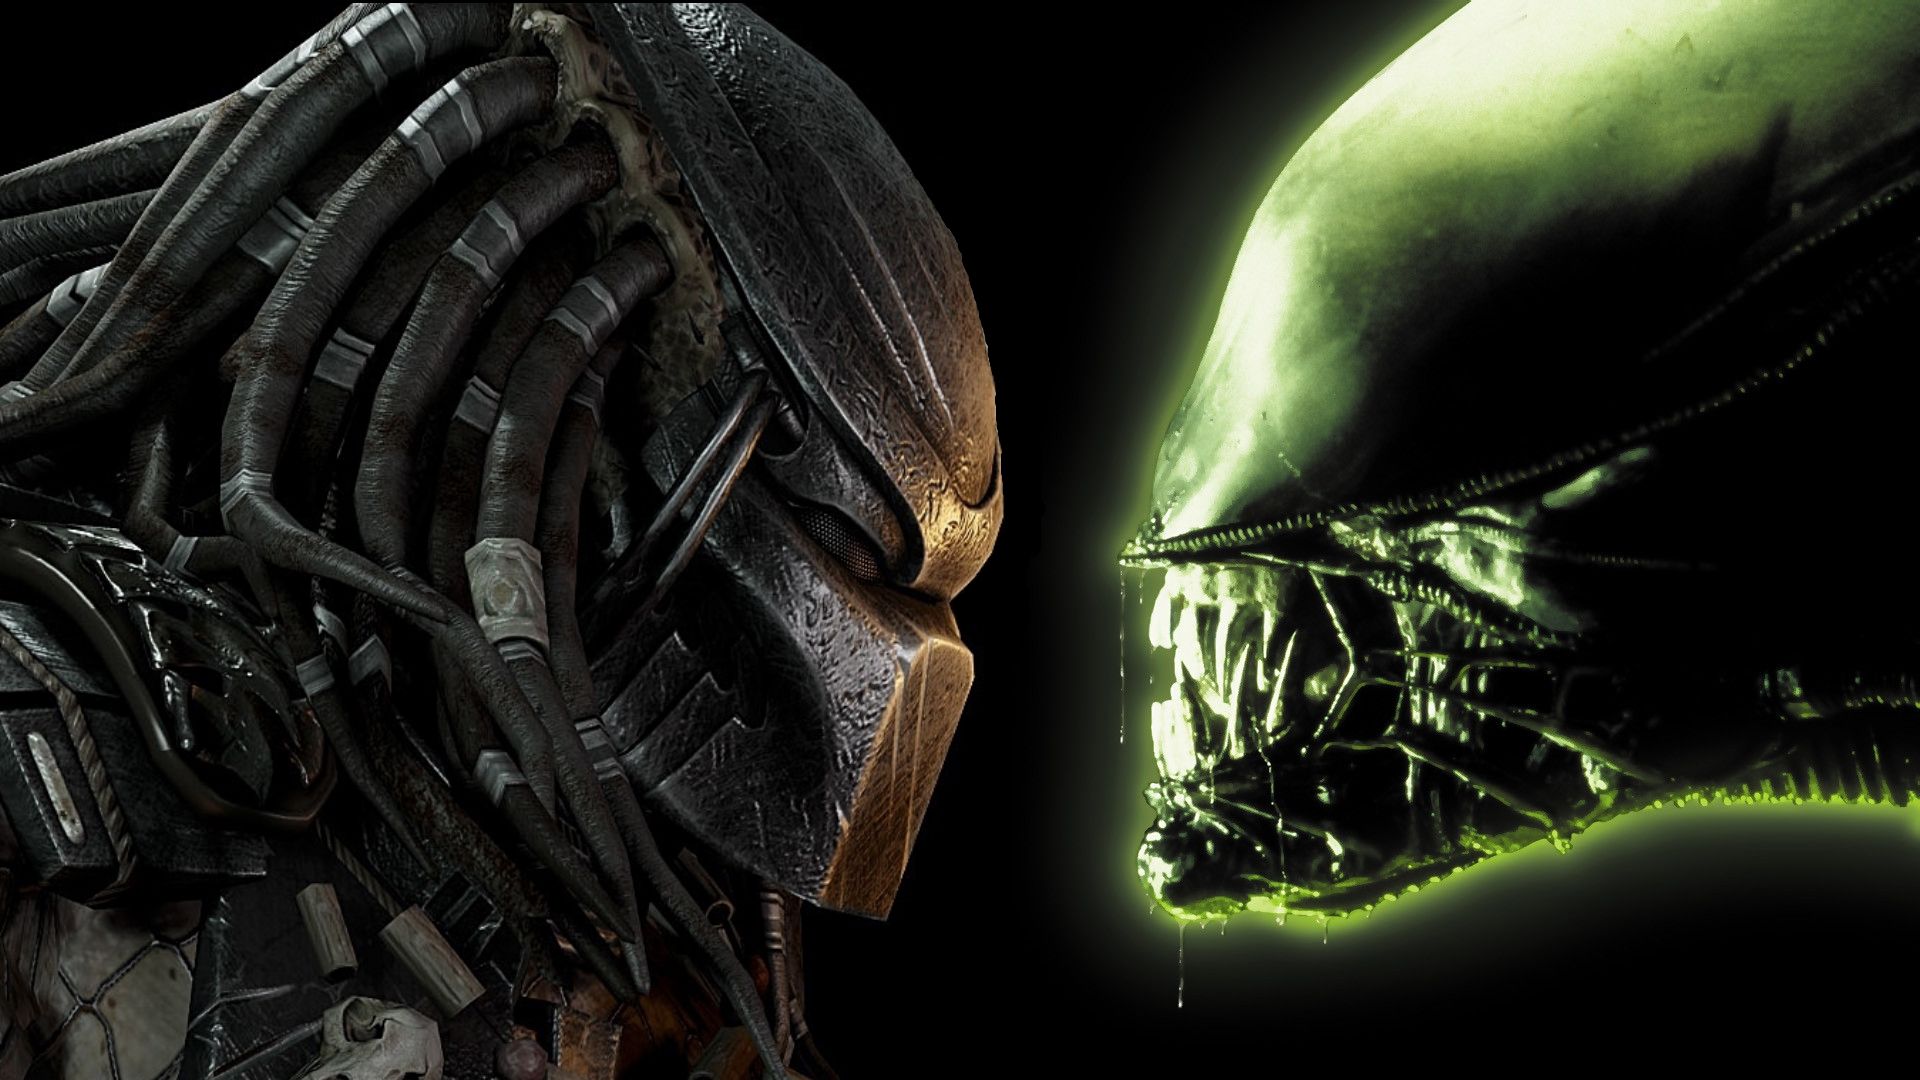 Alien Vs. Predator wallpaper, Sci Fi, HQ Alien Vs. Predator pictureK Wallpaper 2019